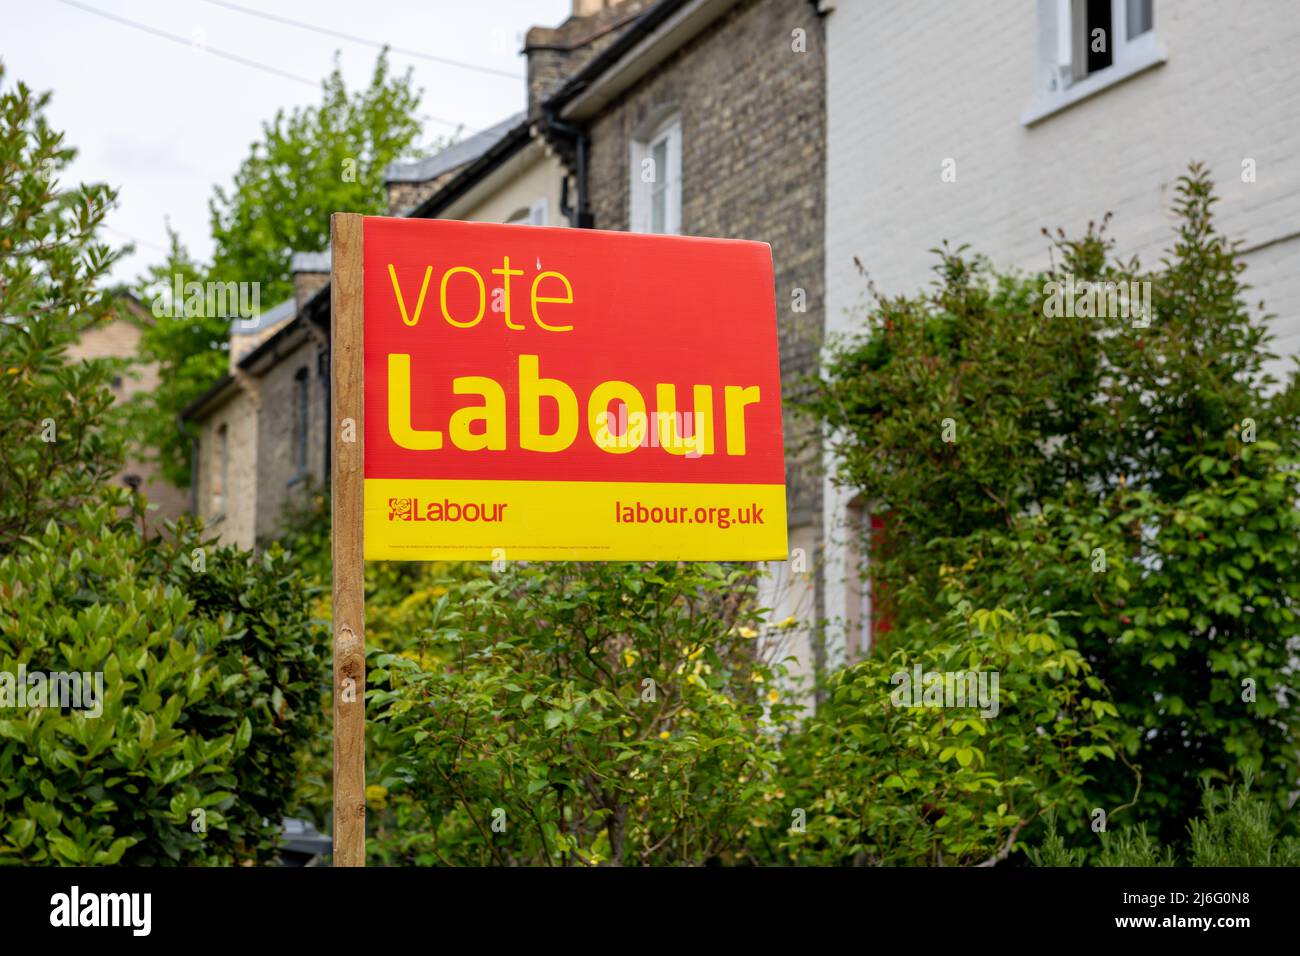 Londra. UK-o4.01.2022. Un cartello di voto dei laburisti fuori da una casa come parte della campagna politica nelle prossime elezioni del consiglio locale in Inghilterra. Foto Stock